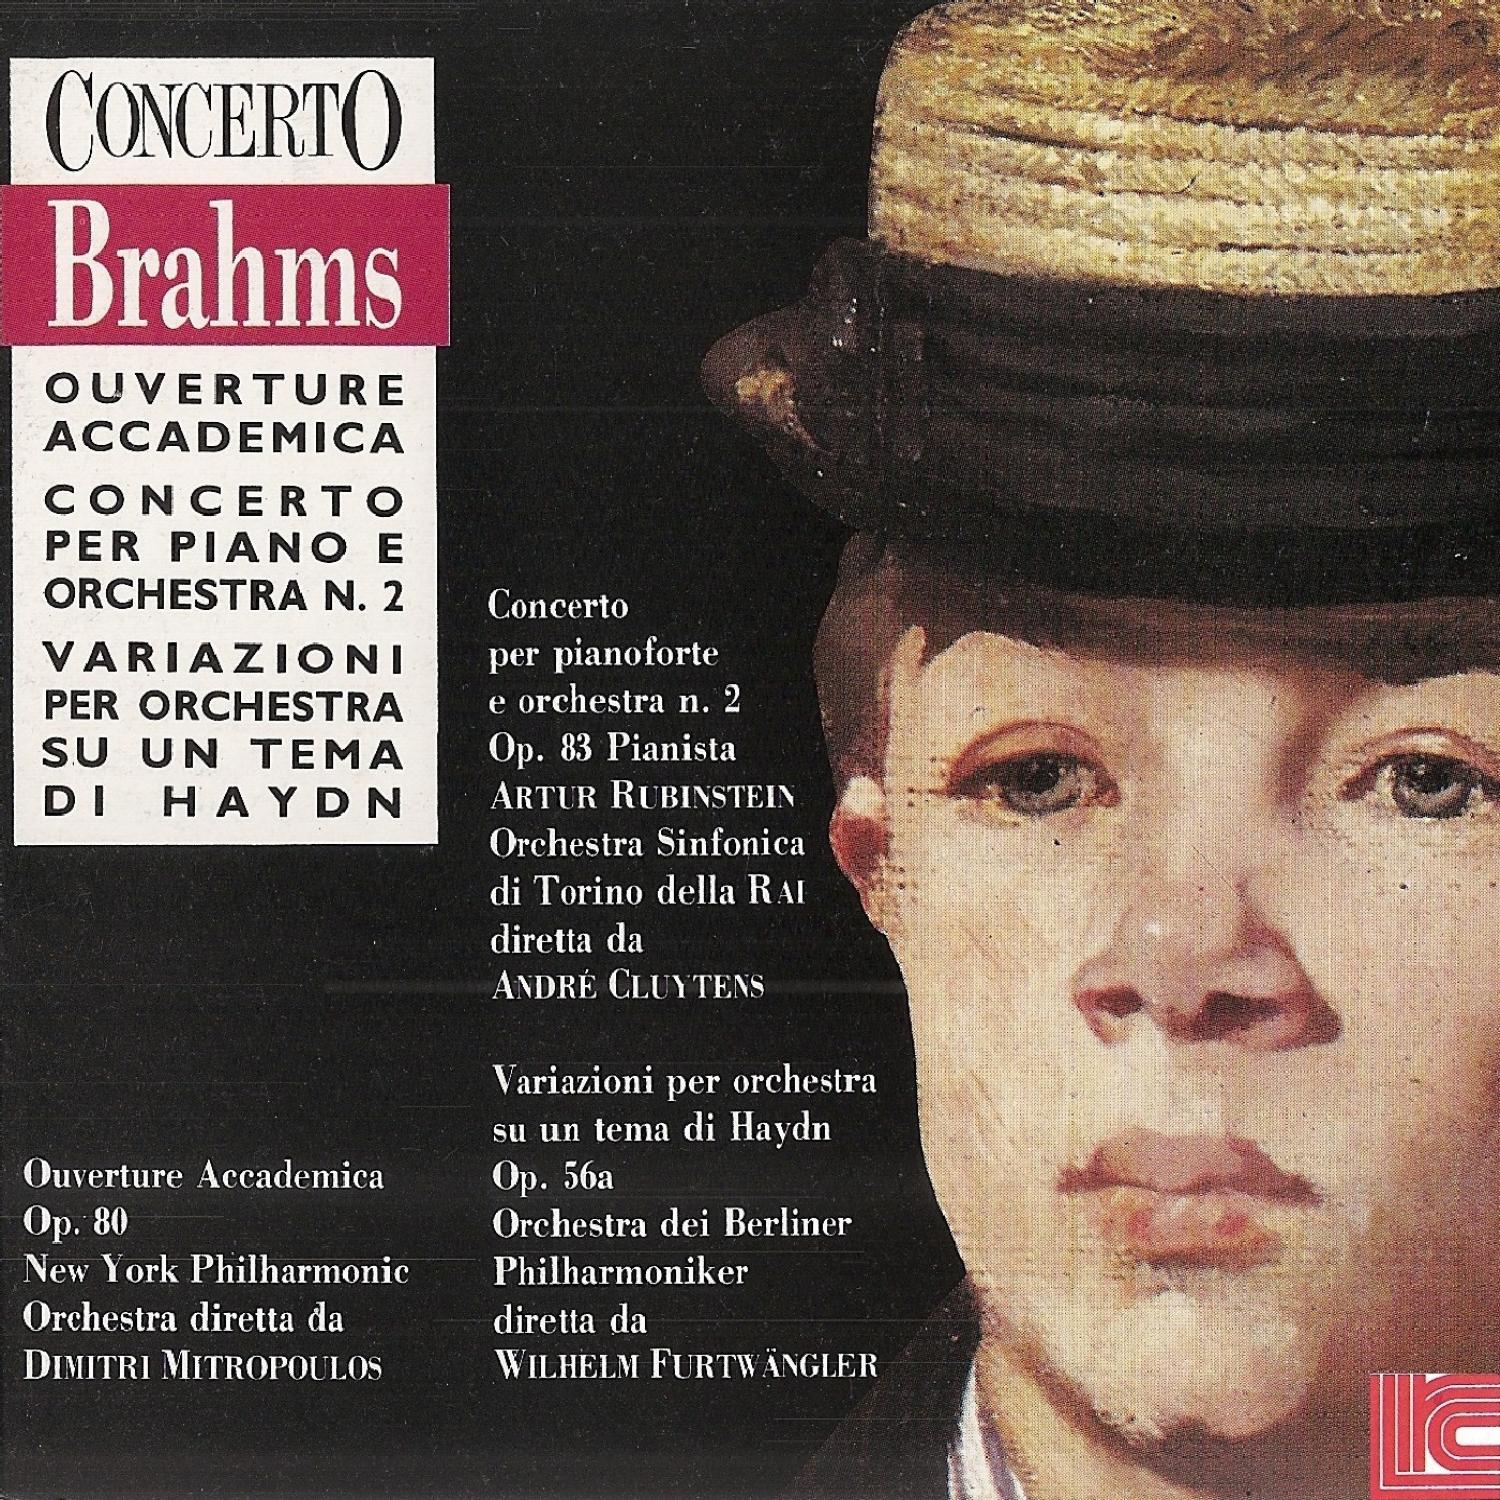 Brahms: Overture Accademica, Concerto No. 2, Variazioni per Orchestra Su Un Tema di Haydn